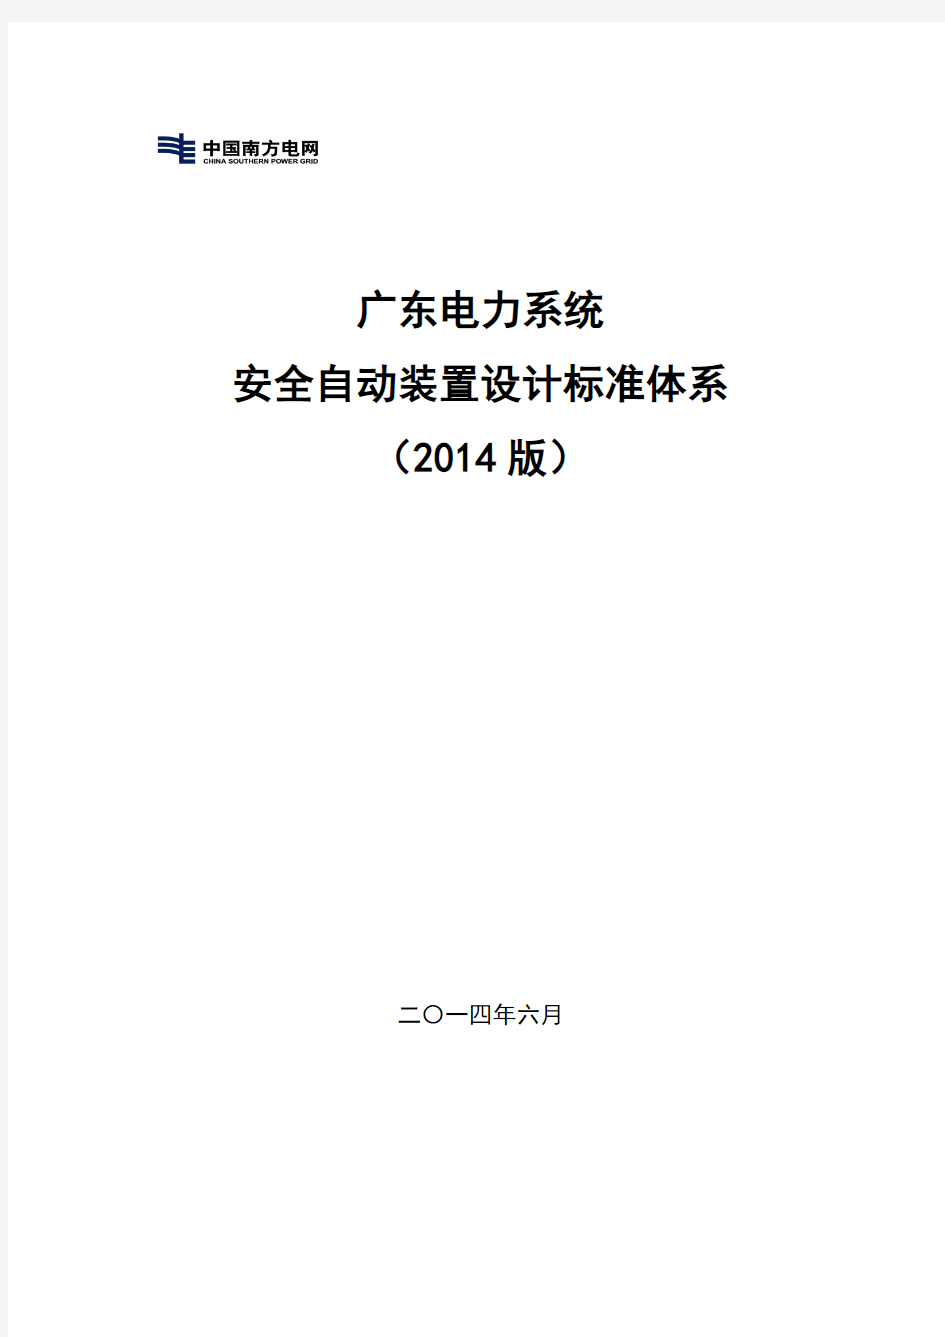 广东电力系统安全自动装置标准化设计体系(2014豪华版)V2